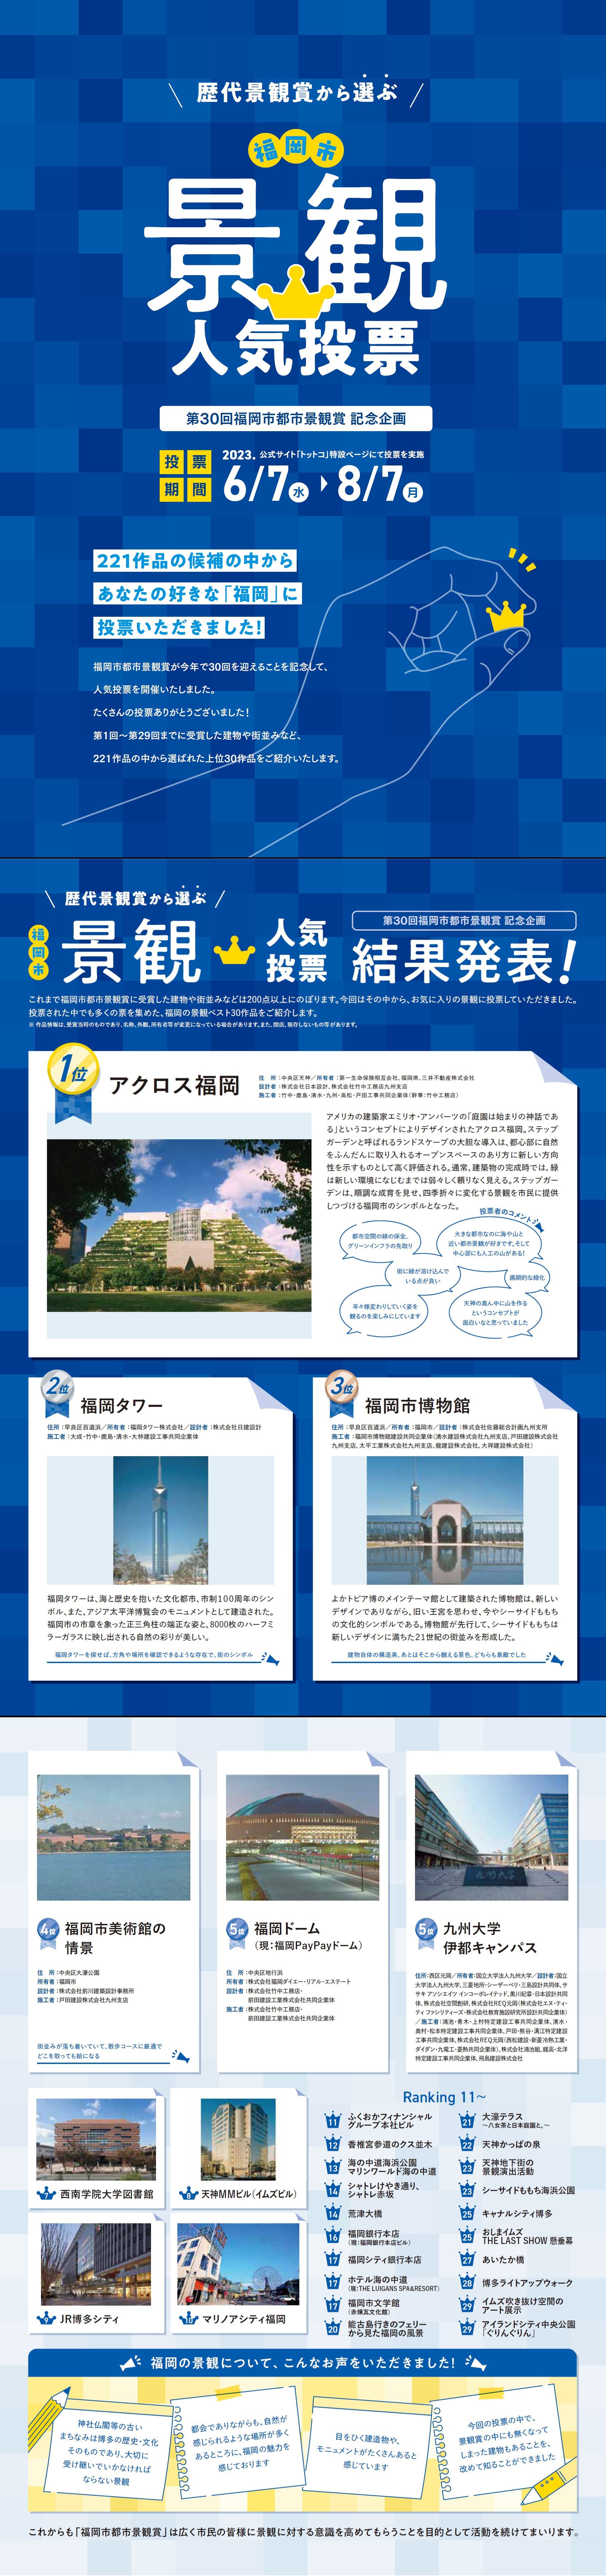 歴代景観賞から選ぶ「福岡市景観人気投票」 結果詳細についての画像1